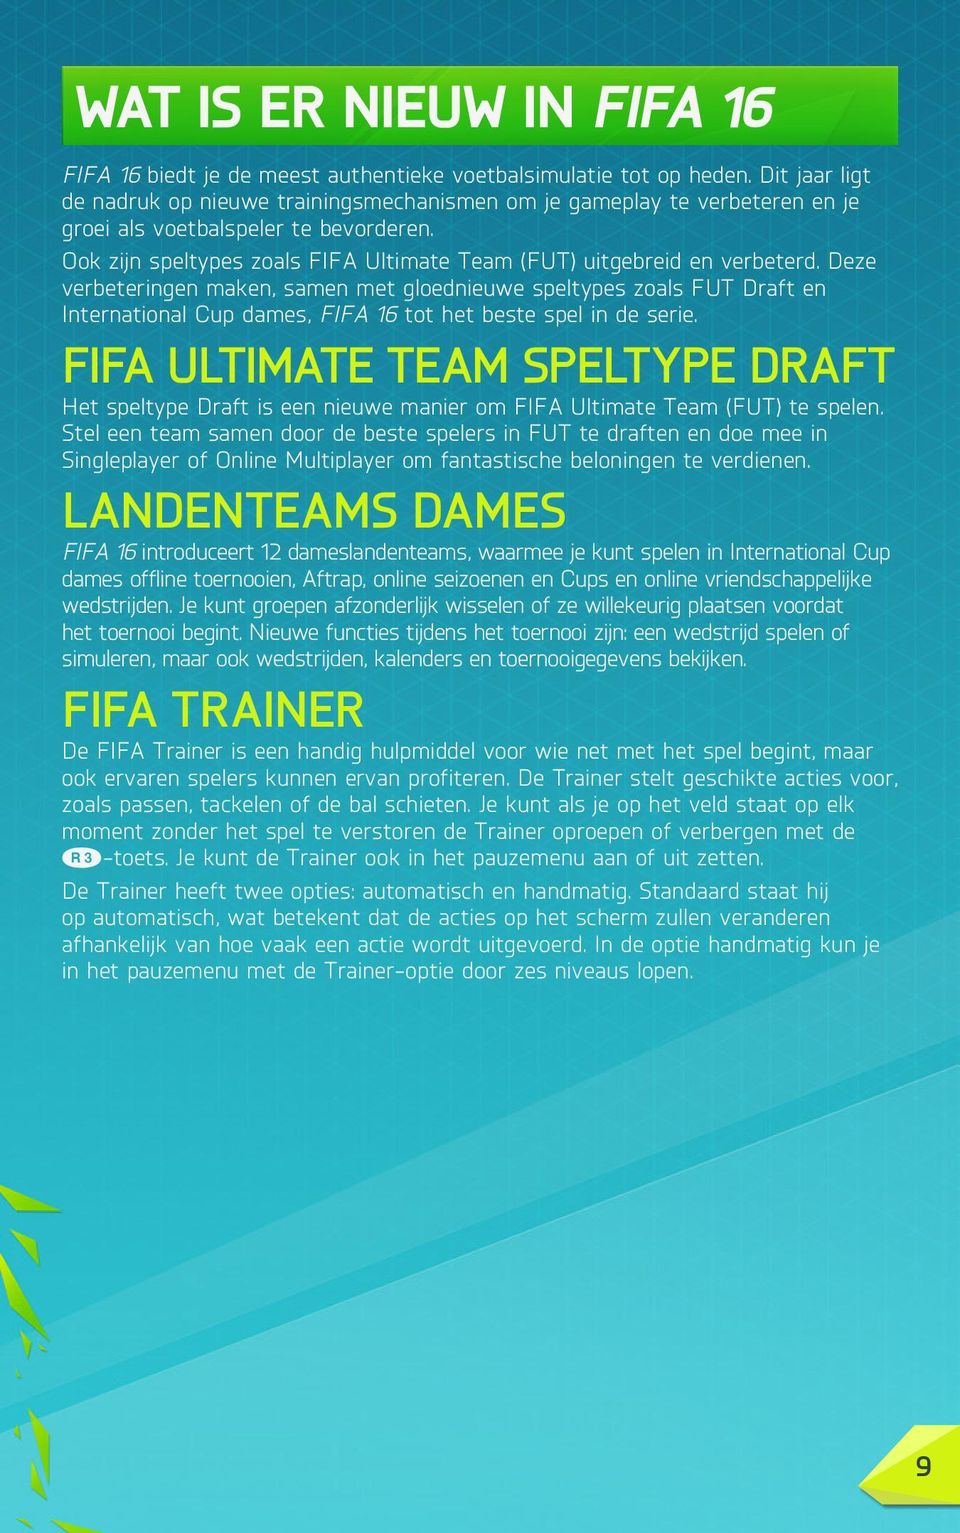 Ook zijn speltypes zoals FIFA Ultimate Team (FUT) uitgebreid en verbeterd.